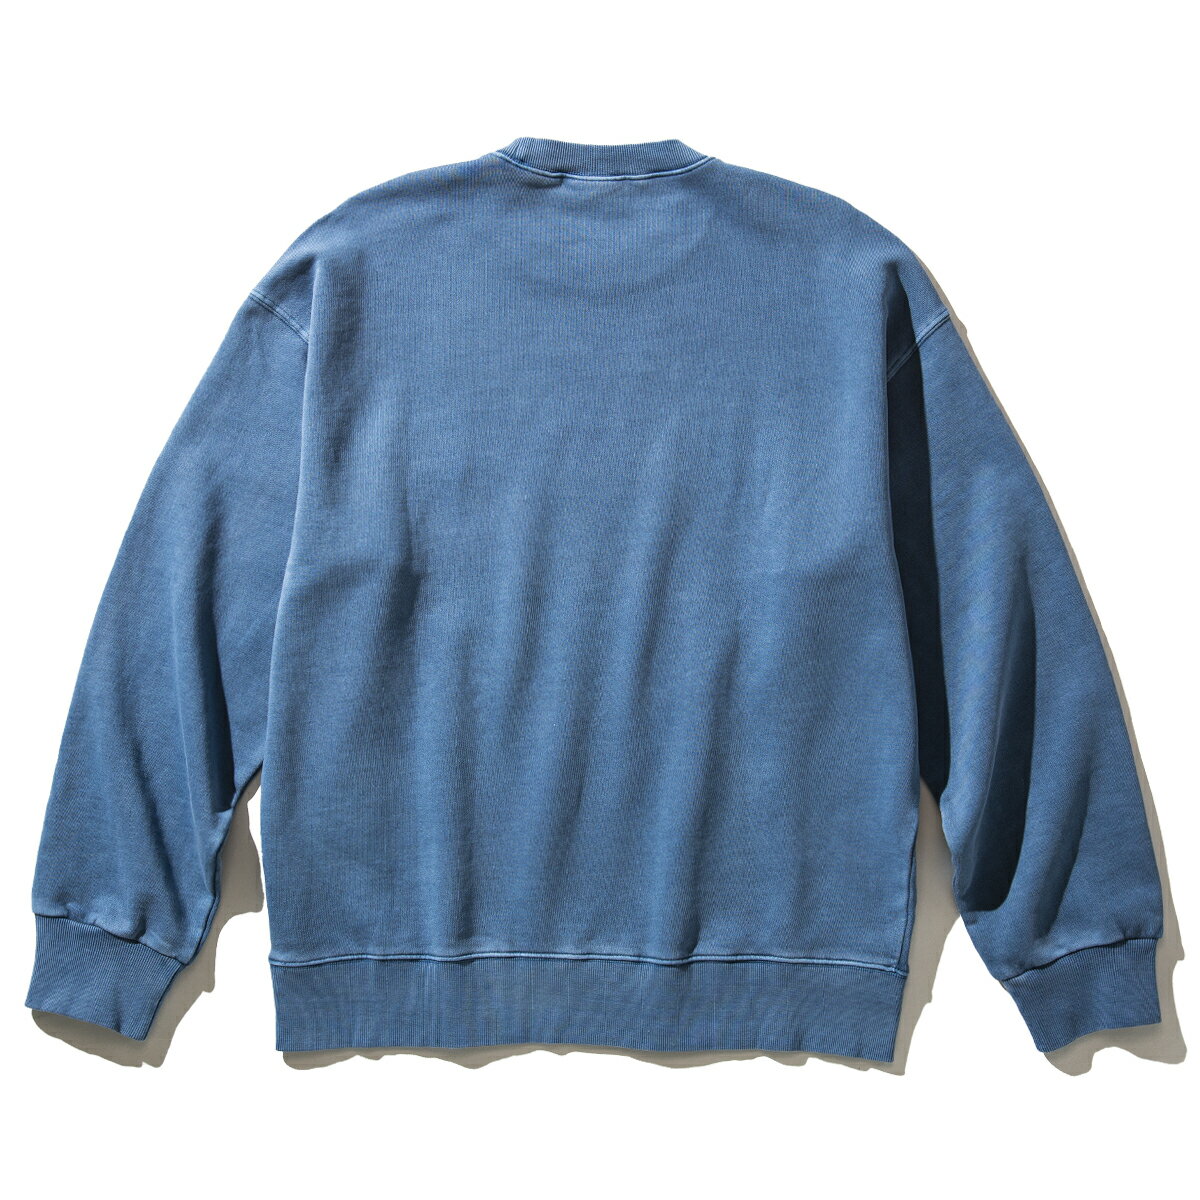 Carhartt NELSON SWEATSHIRT(BLUE)(カーハート ネルソンスウェットシャツ)【クルースウェット】【22SP】【20off】